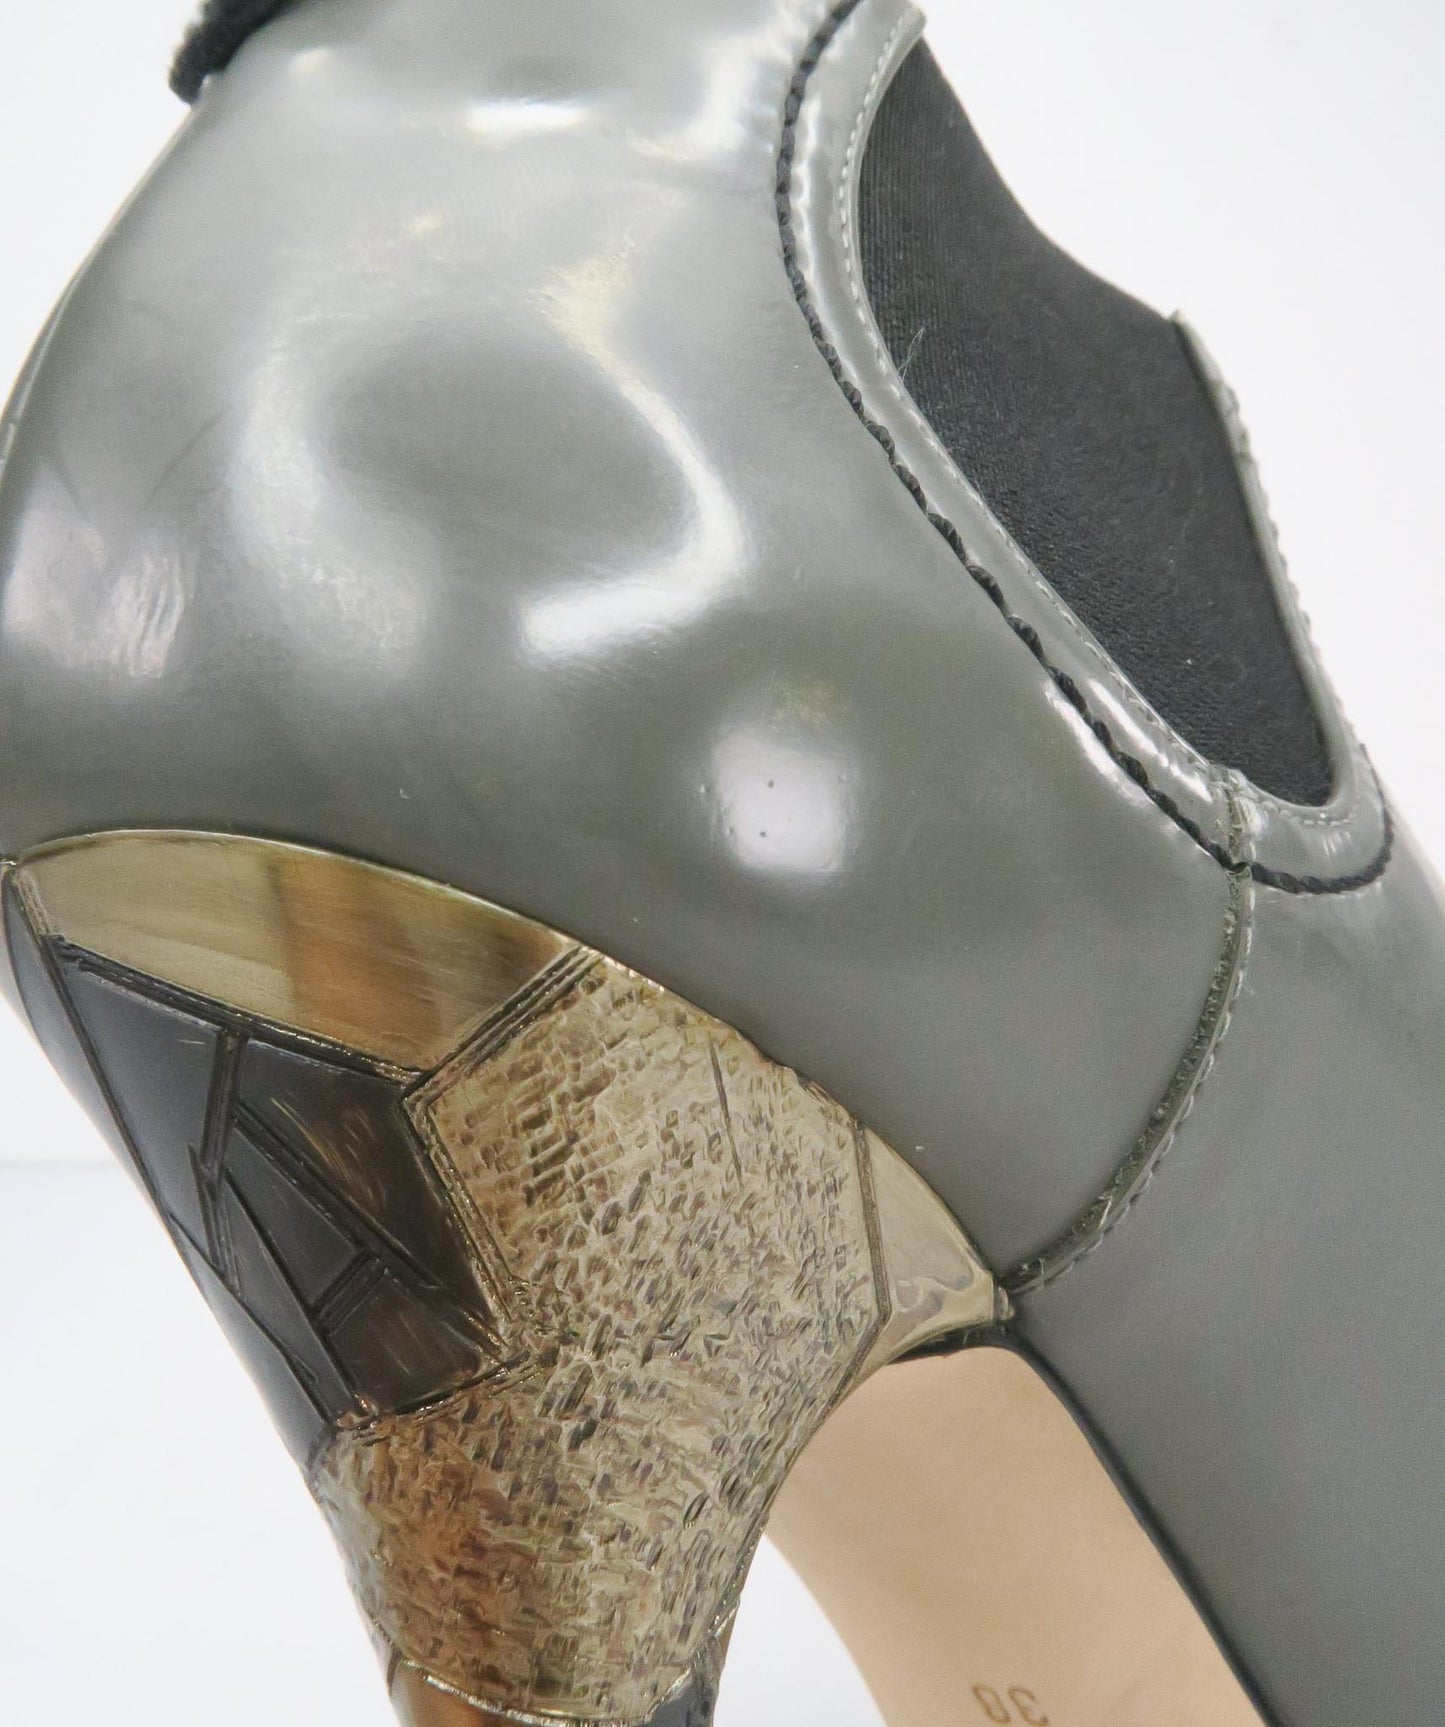 GIUSEPPE ZANOTTI Grey Metallic HeelAnkle Boots EU 38 UK 5